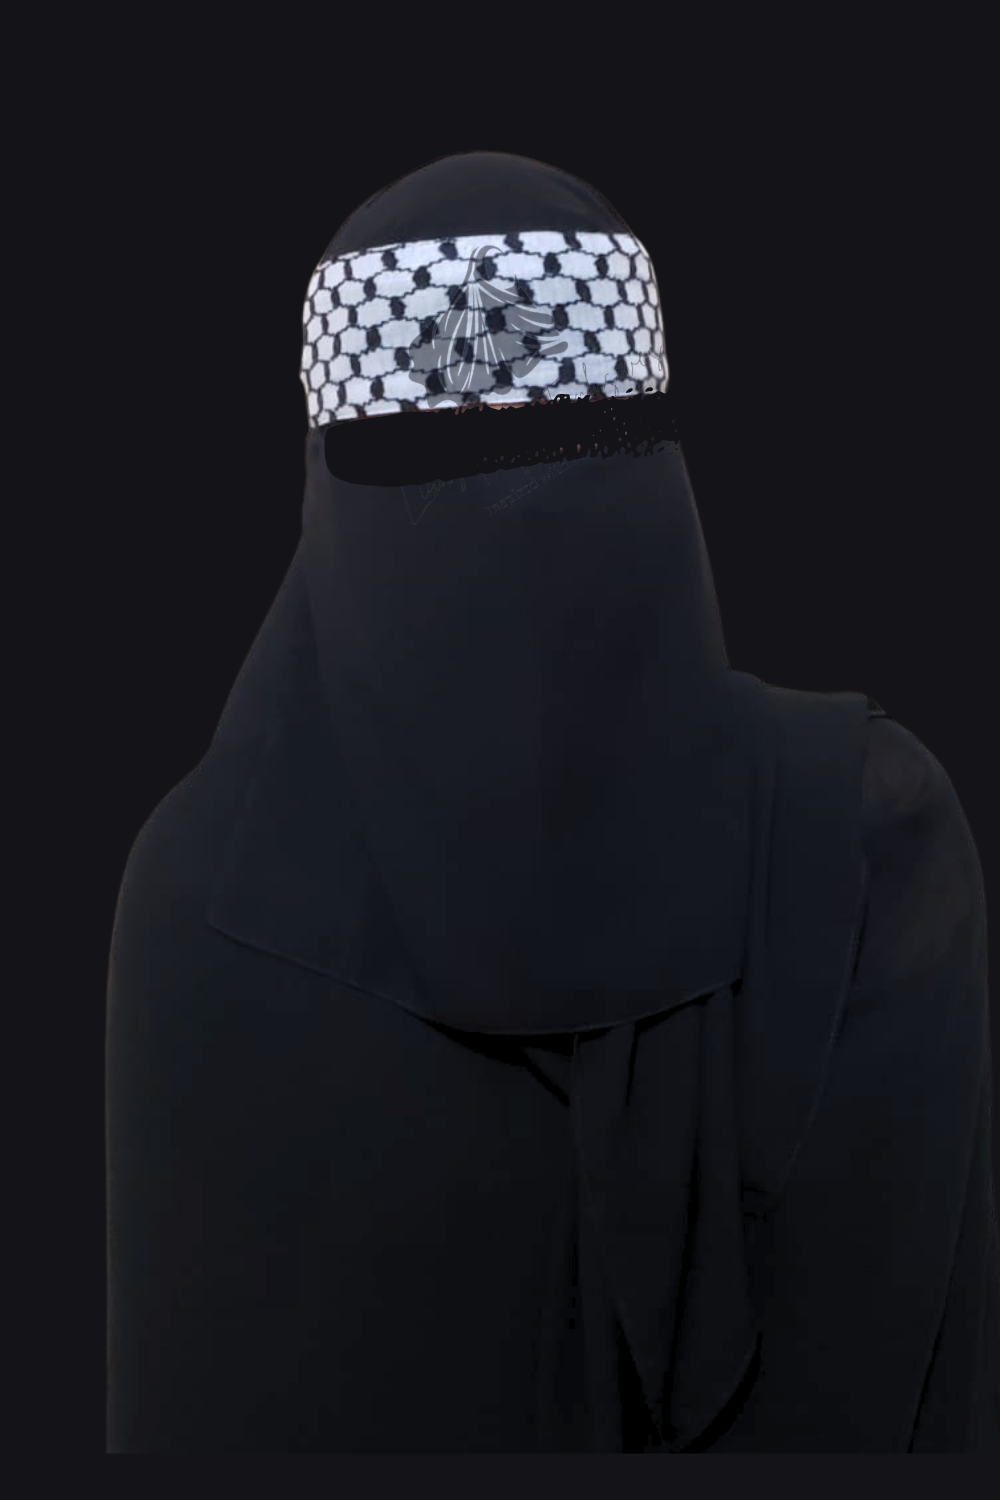 Keffiyah niqab with Palestinian keffiyah and black niqab